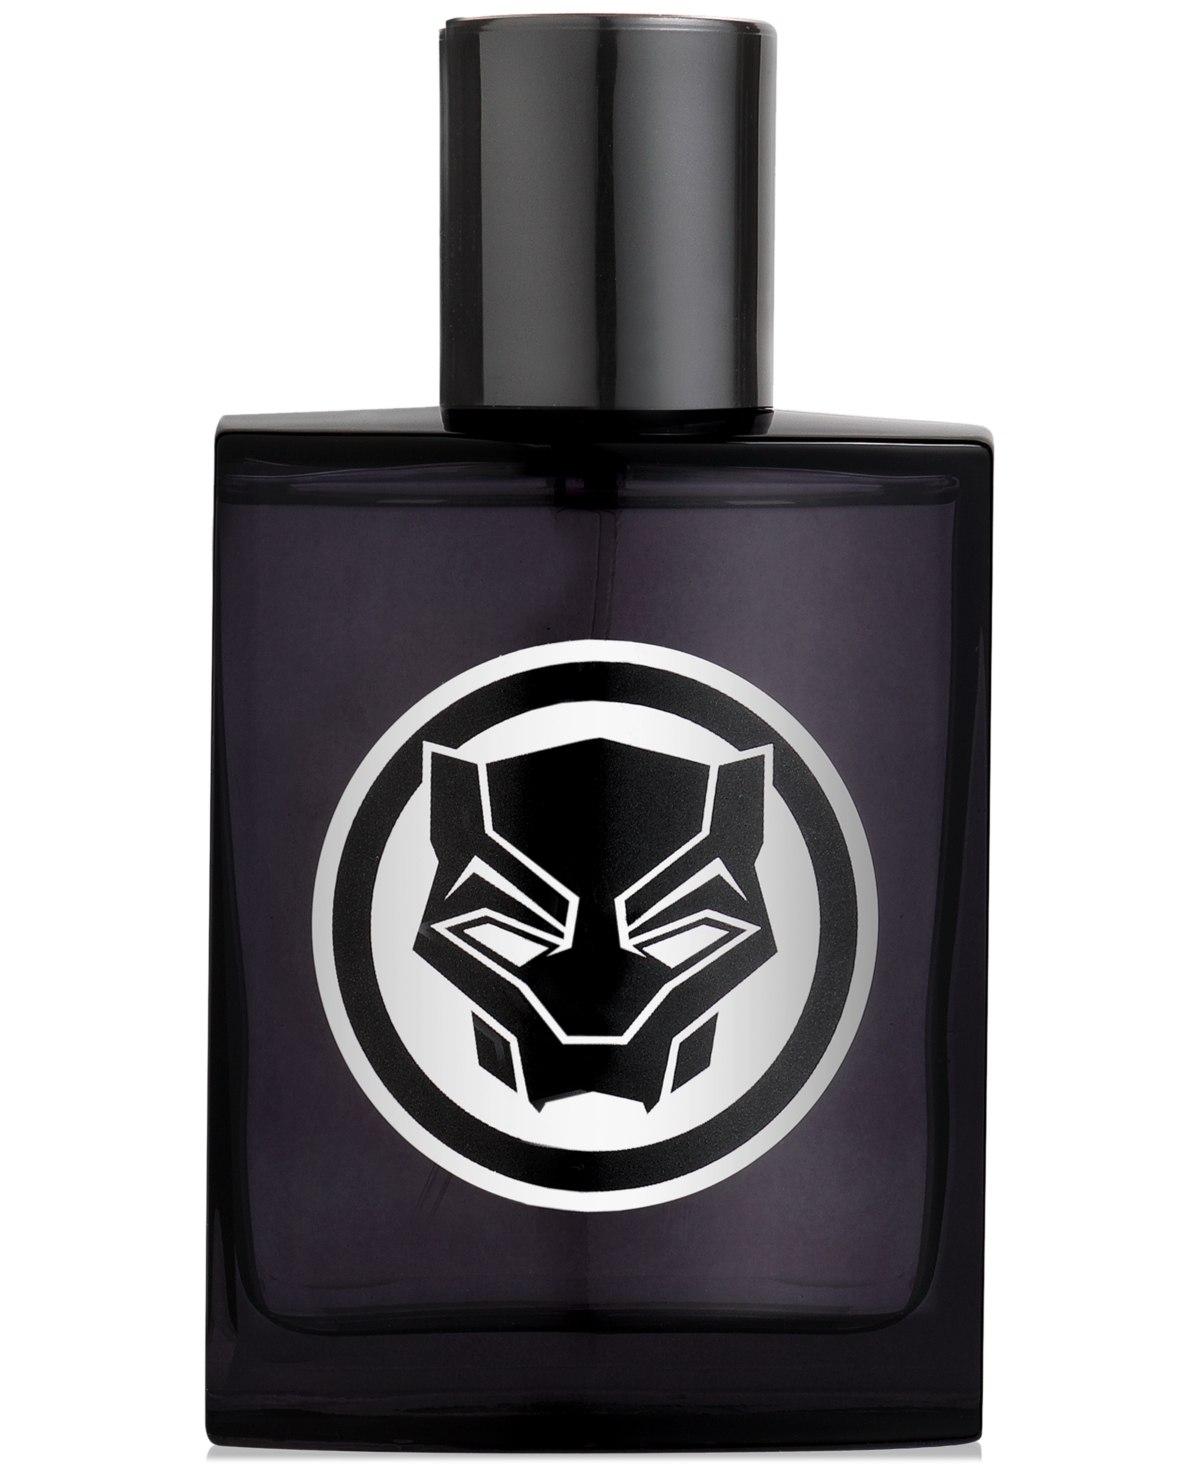 Black Panther Eau de Toilette Spray, 3.4 oz.